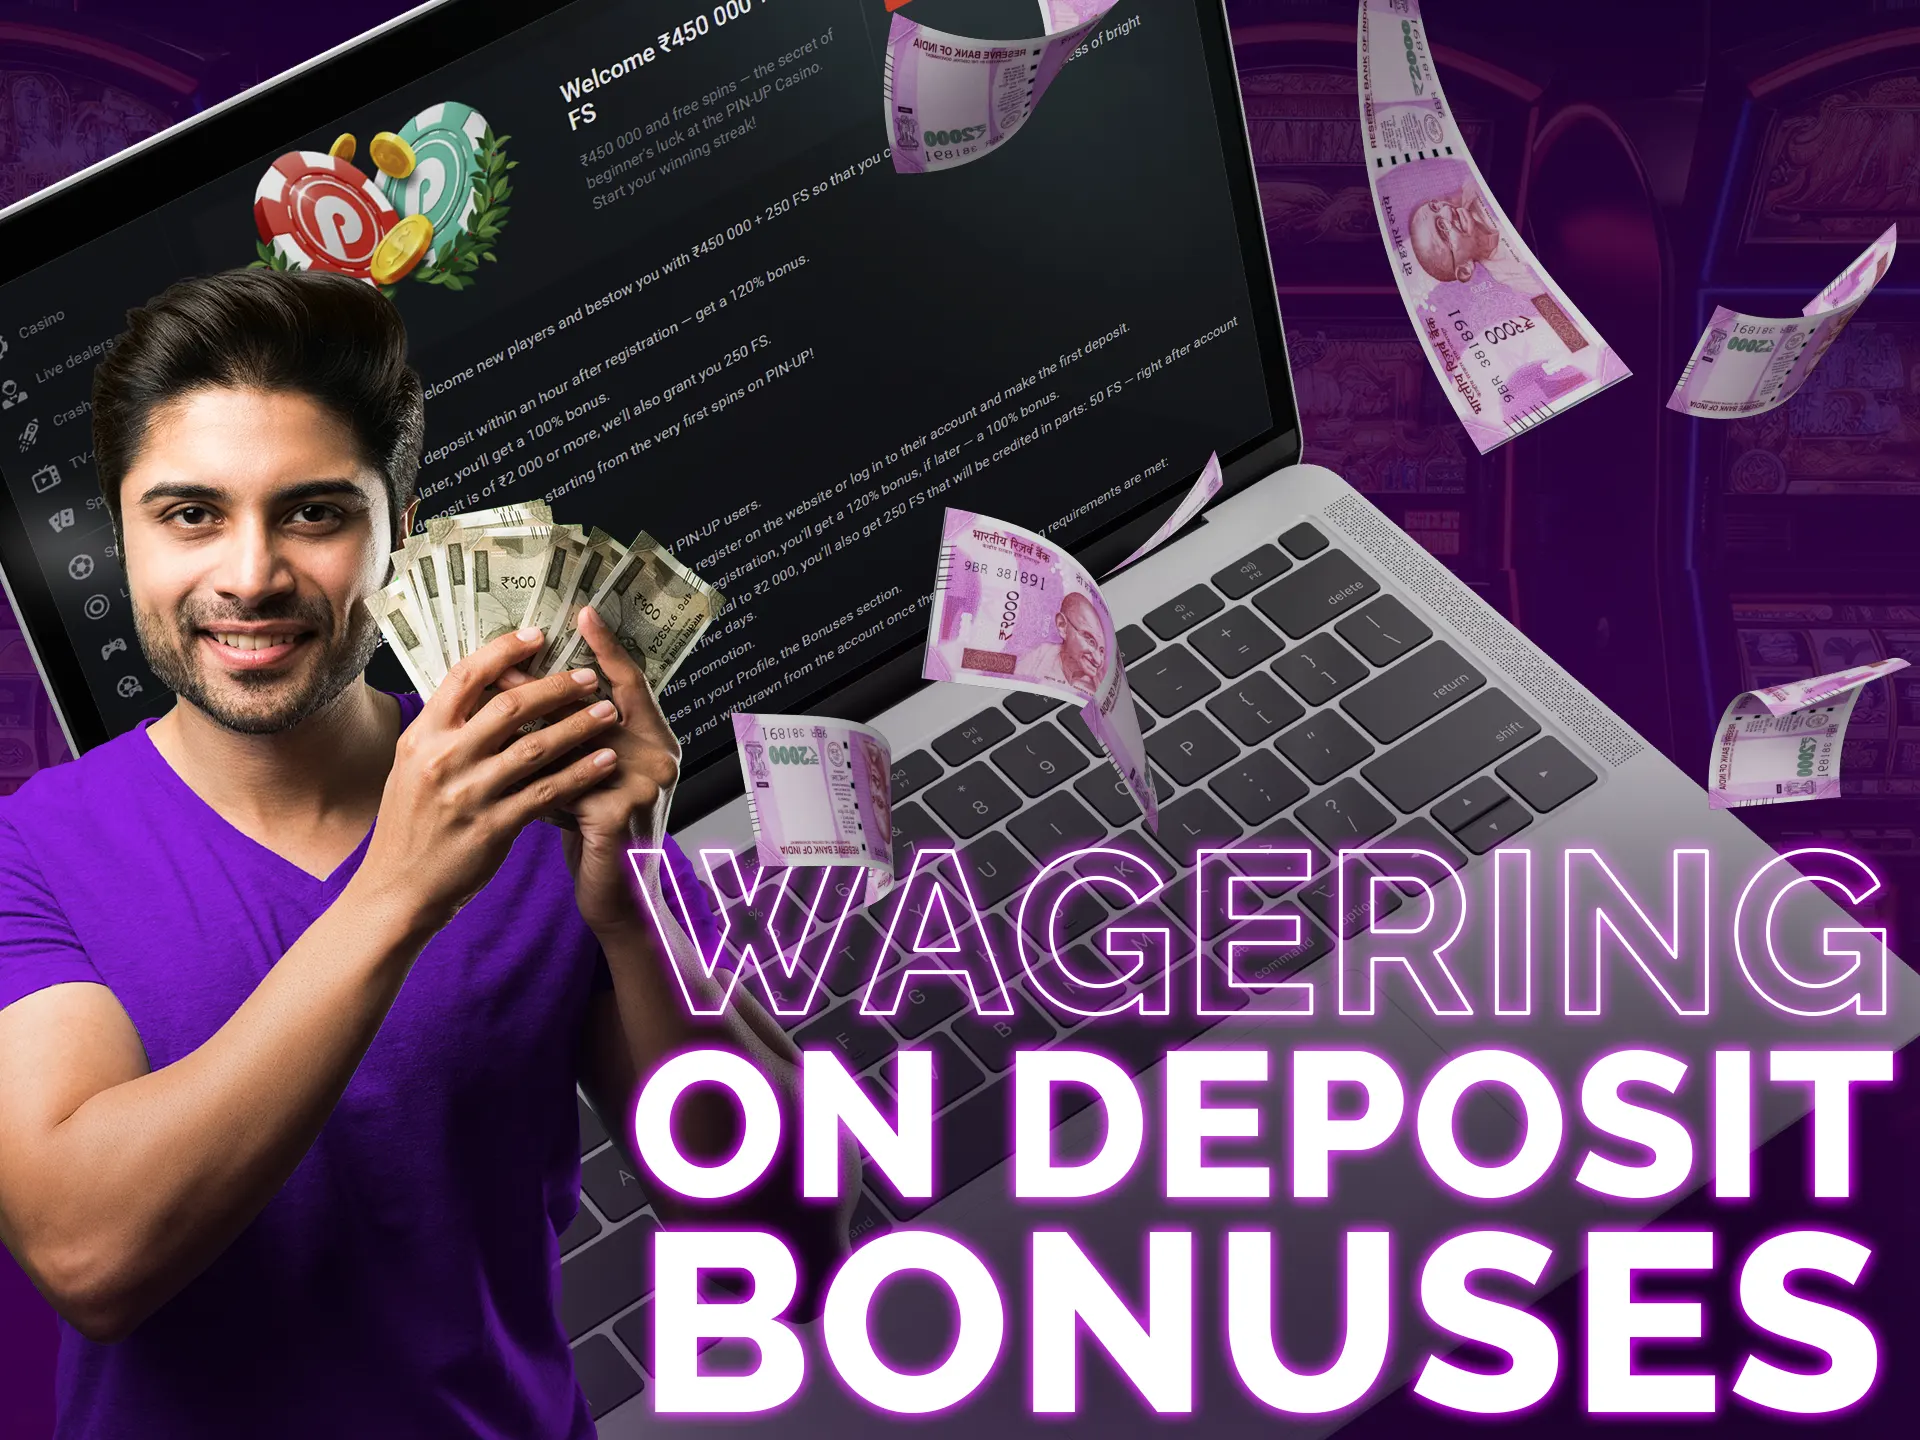 Wagering on deposit bonuses may apply to bonus or deposit.